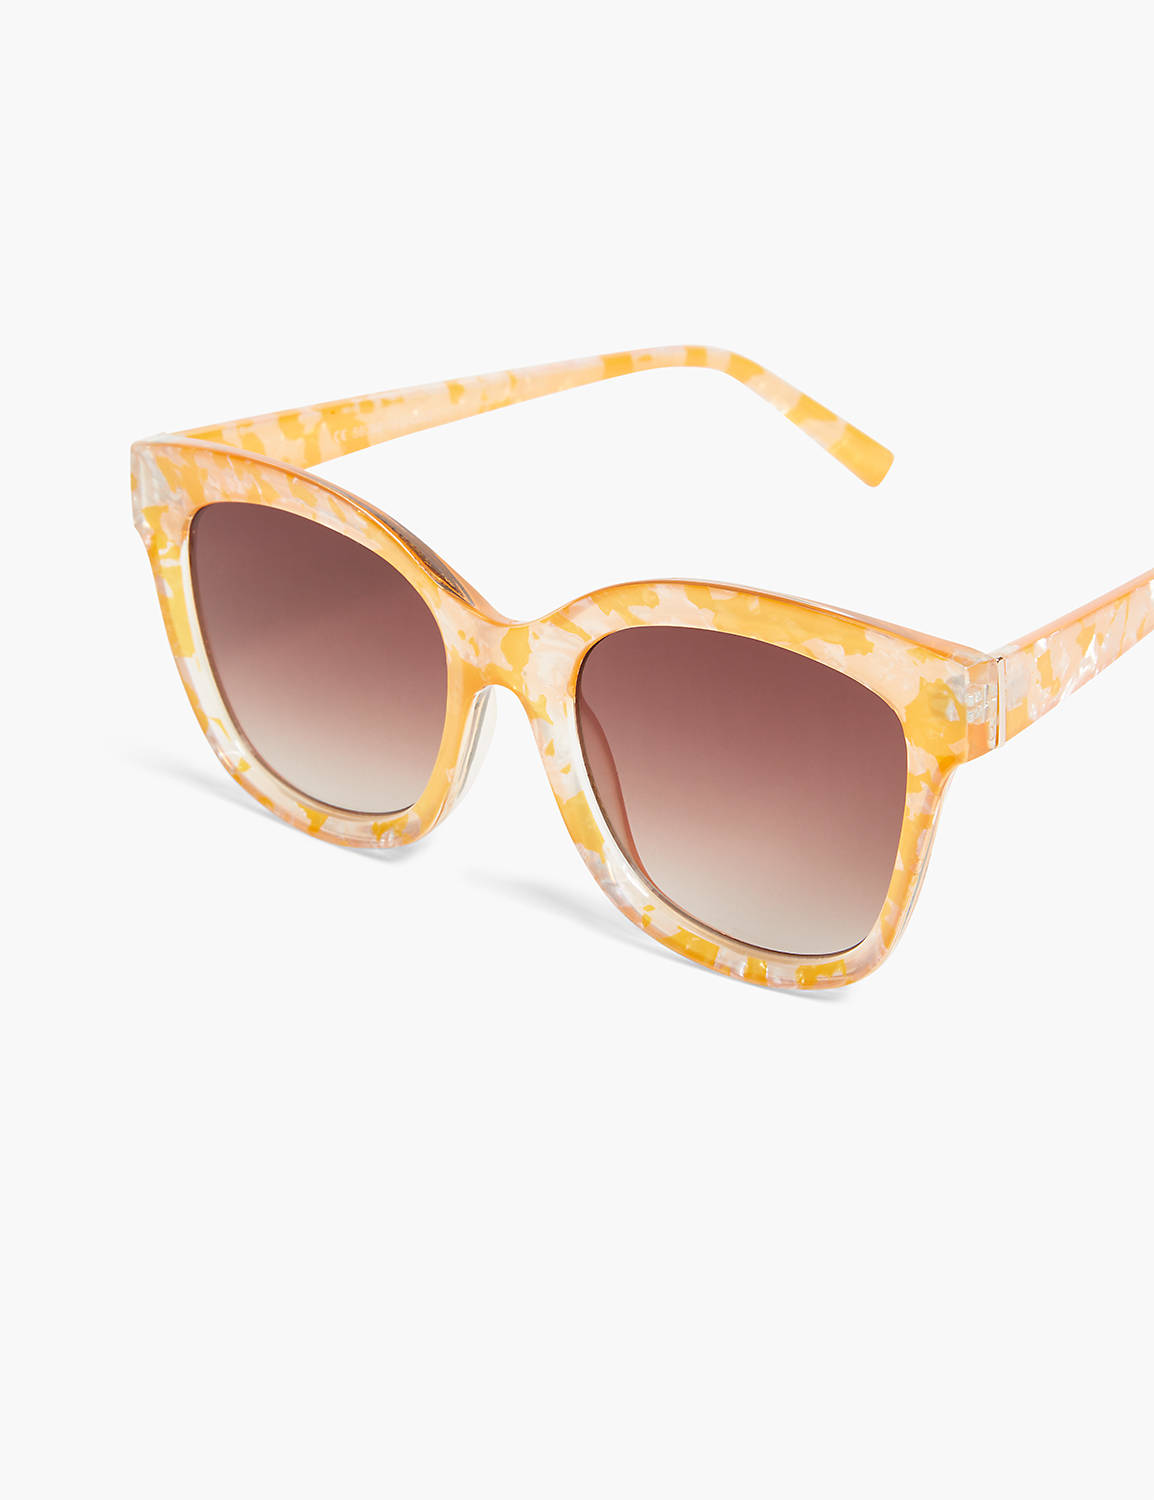 Pearlized Orange Cat Eye Sunglasses Product Image 1